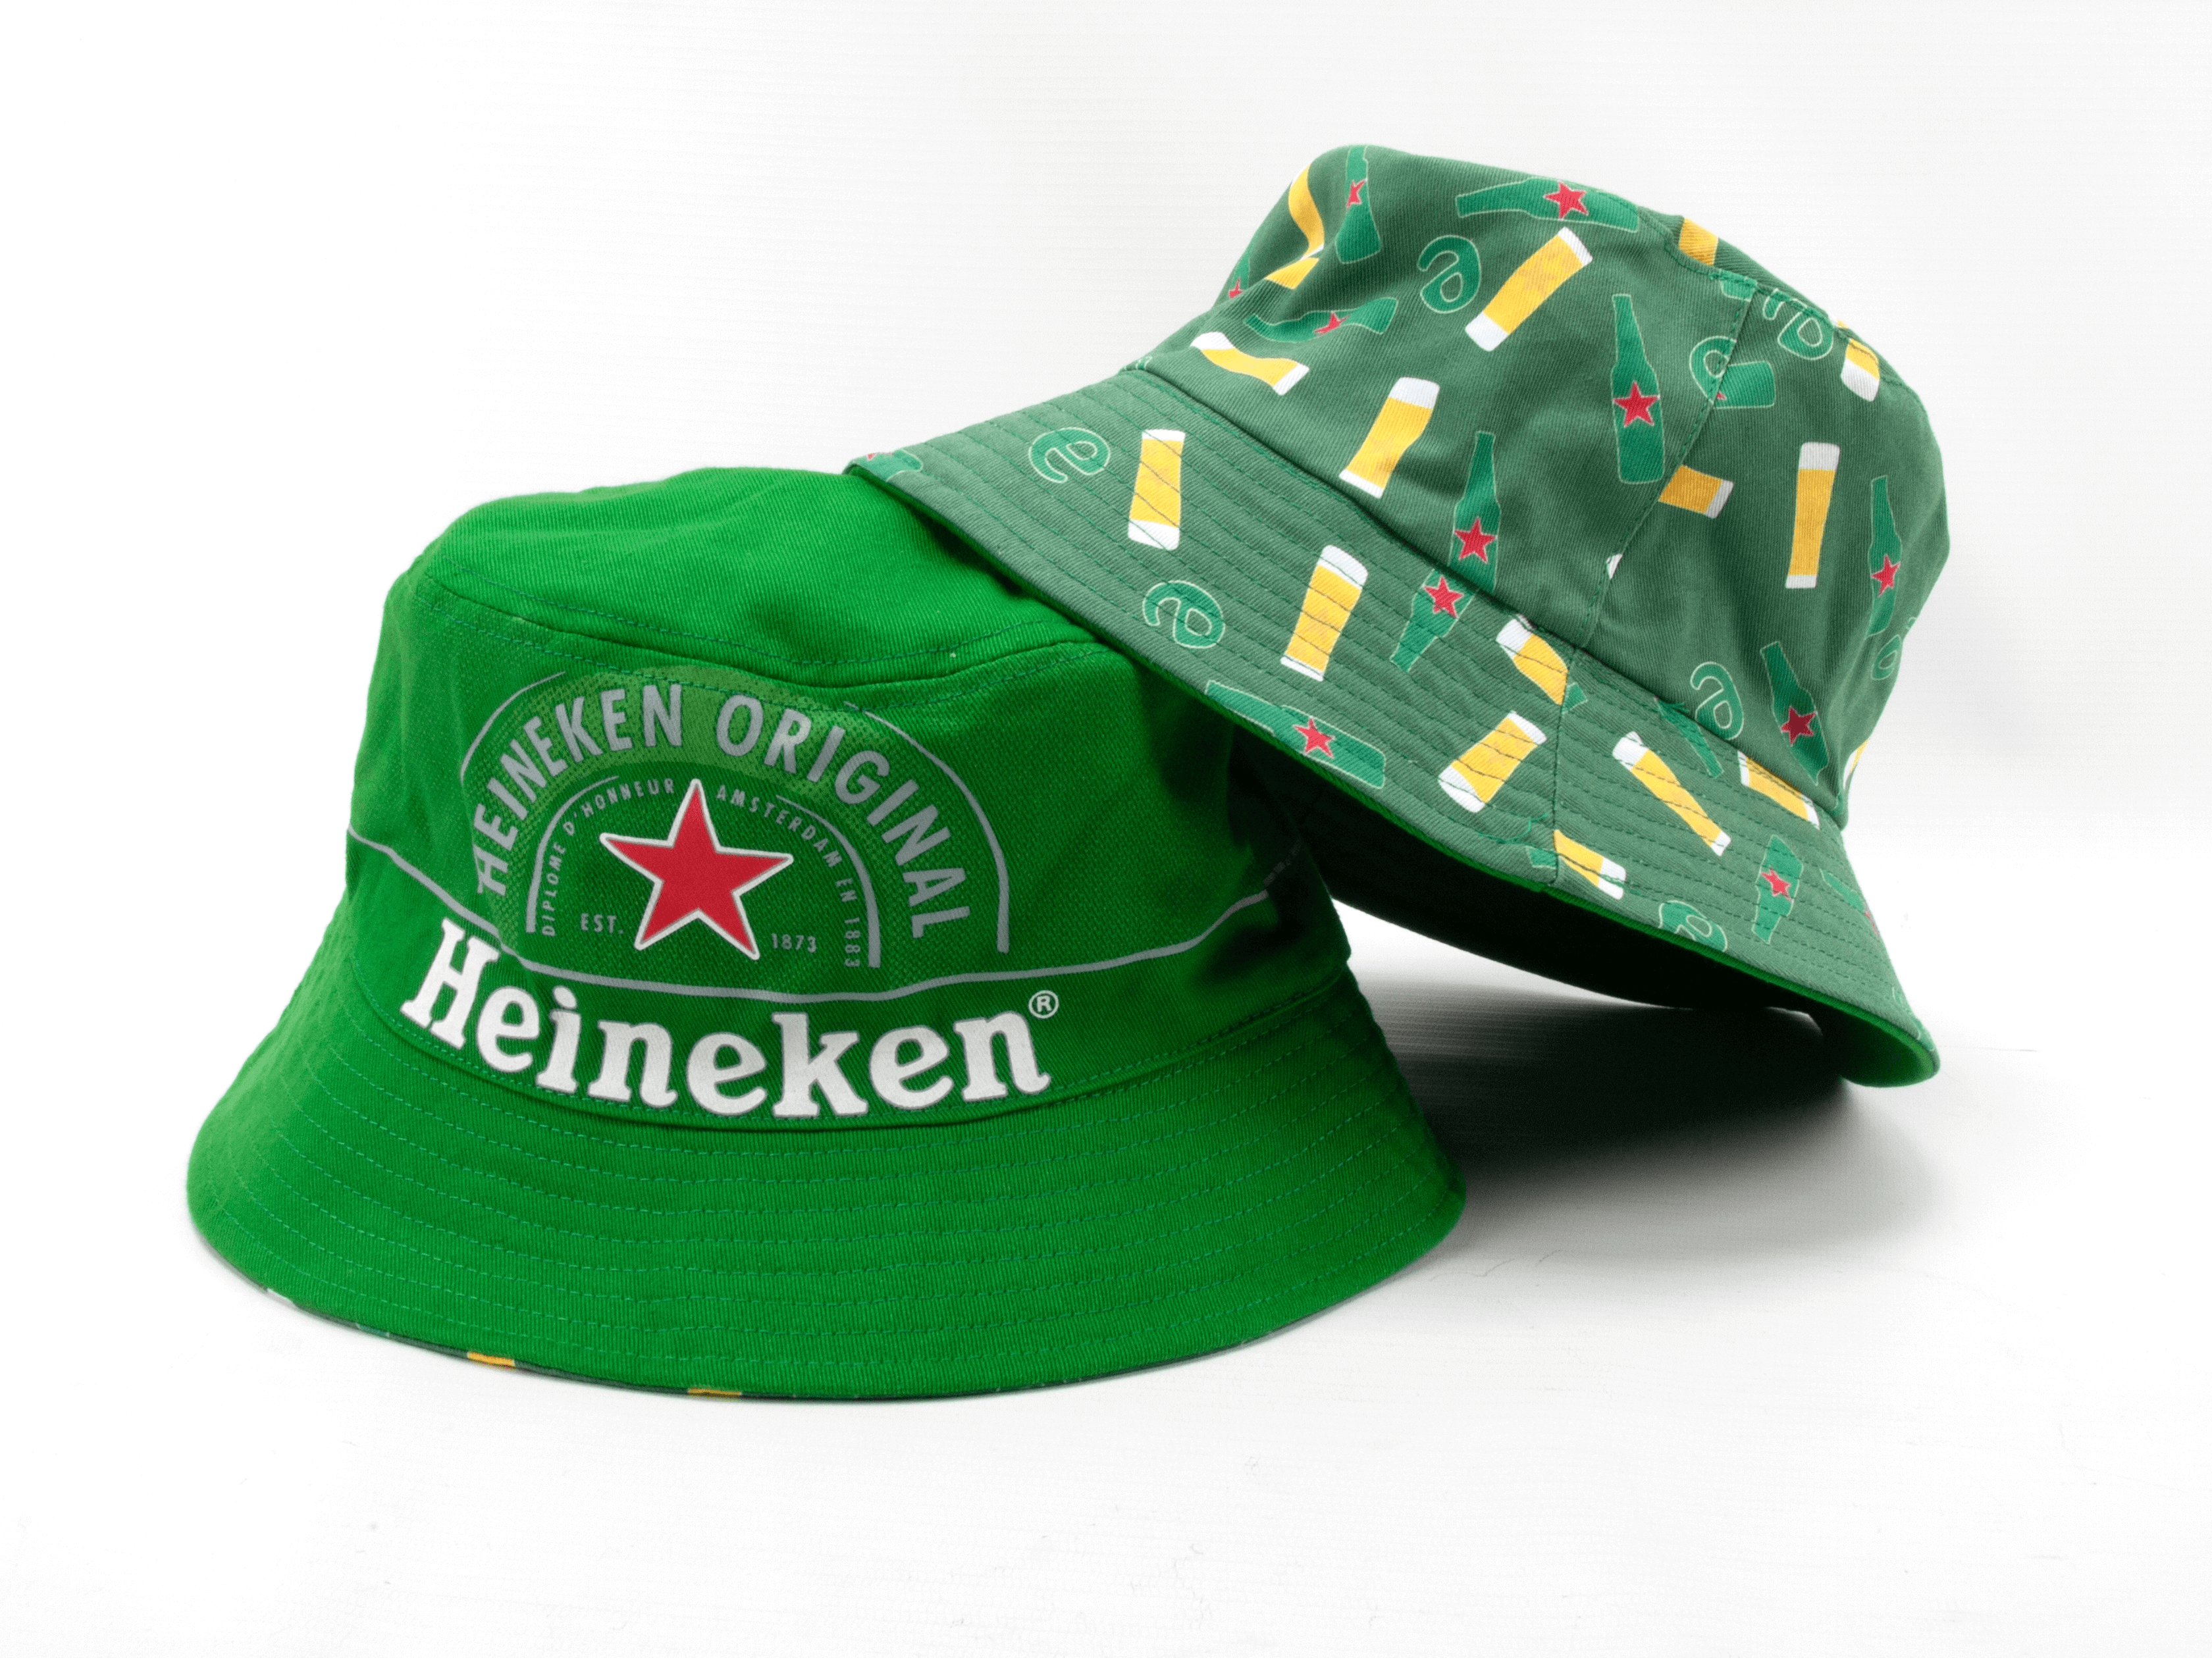 Bob ® Heineken